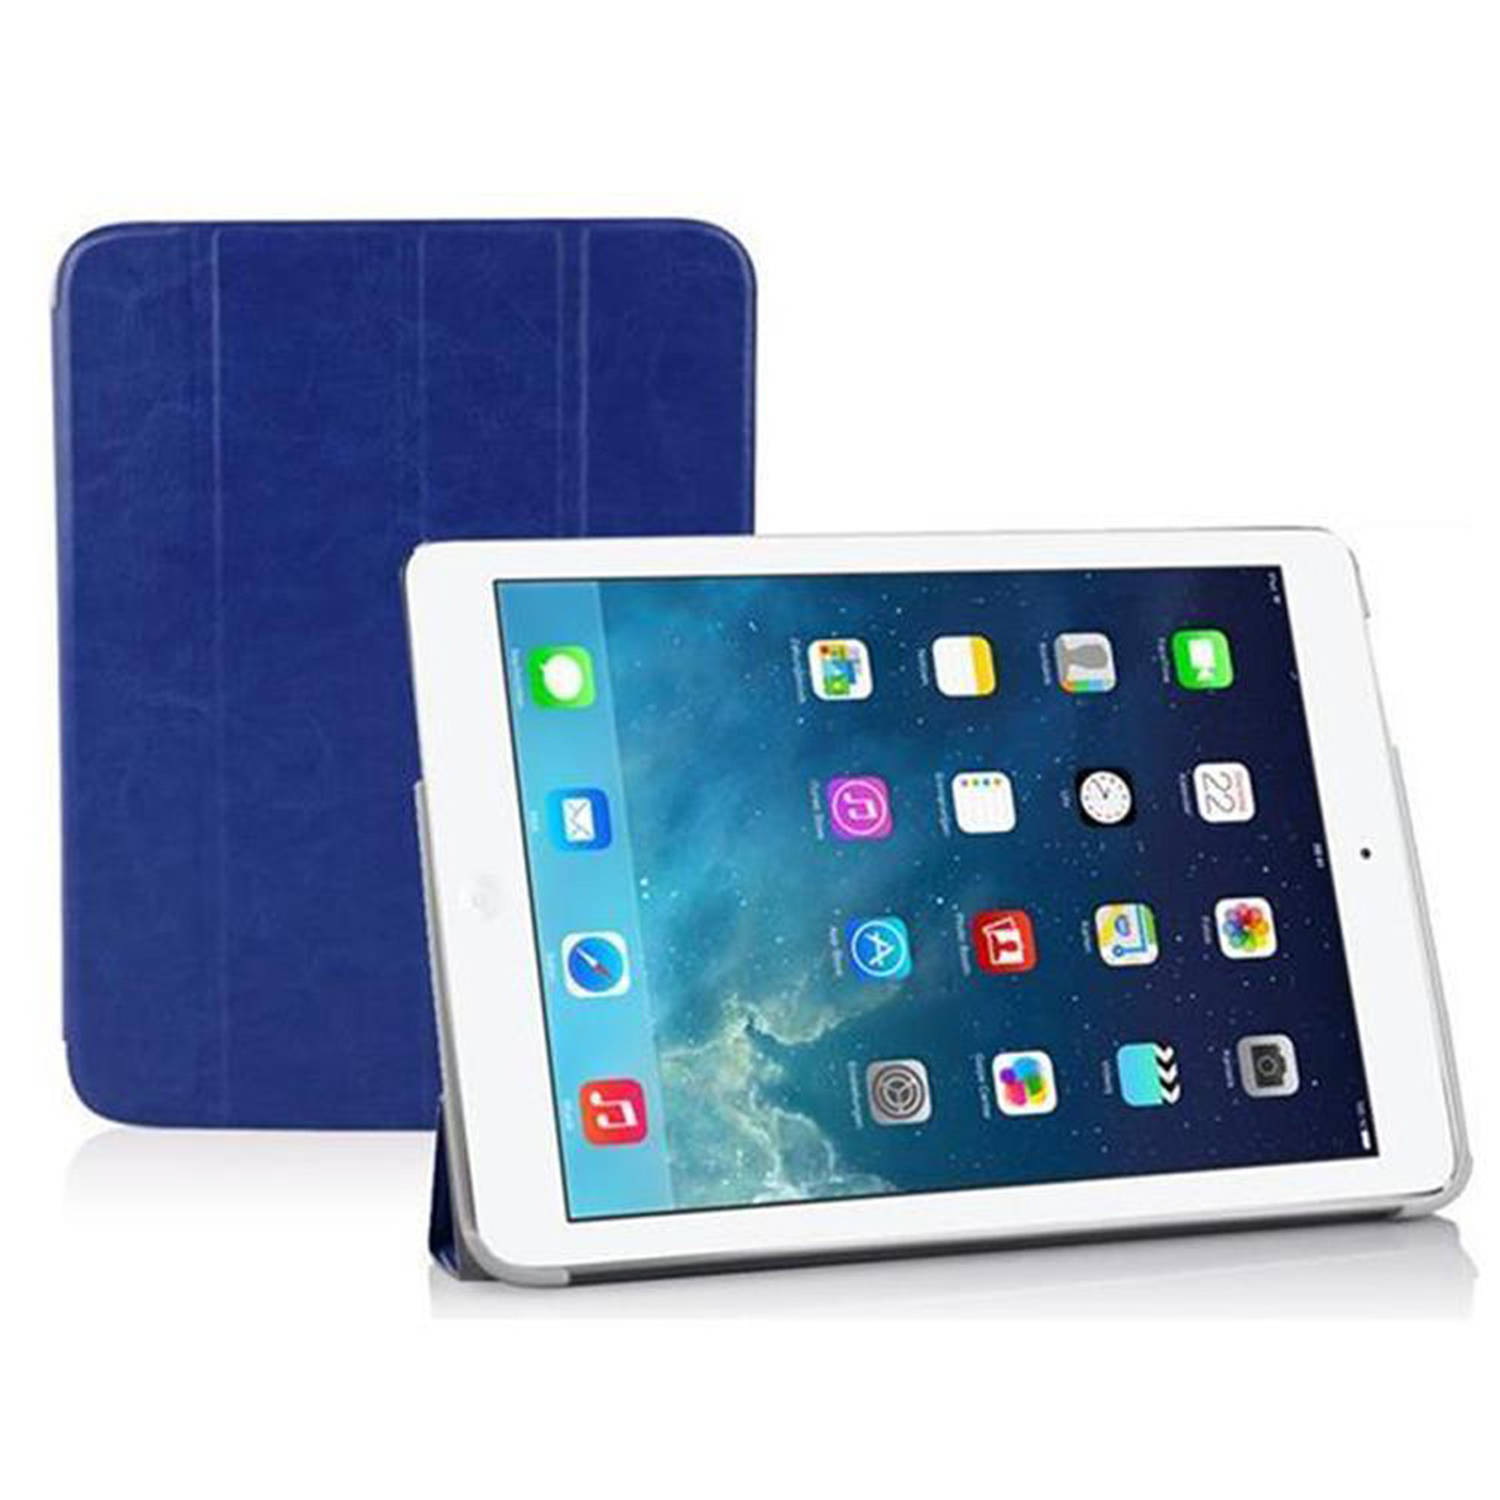 Cadorabo Tablet hoes voor Apple iPad AIR 2 2014 / AIR 2013 in PACIFIC BLAUW - Ultra dunne beschermhoes met automatische waakstand en standfunctie